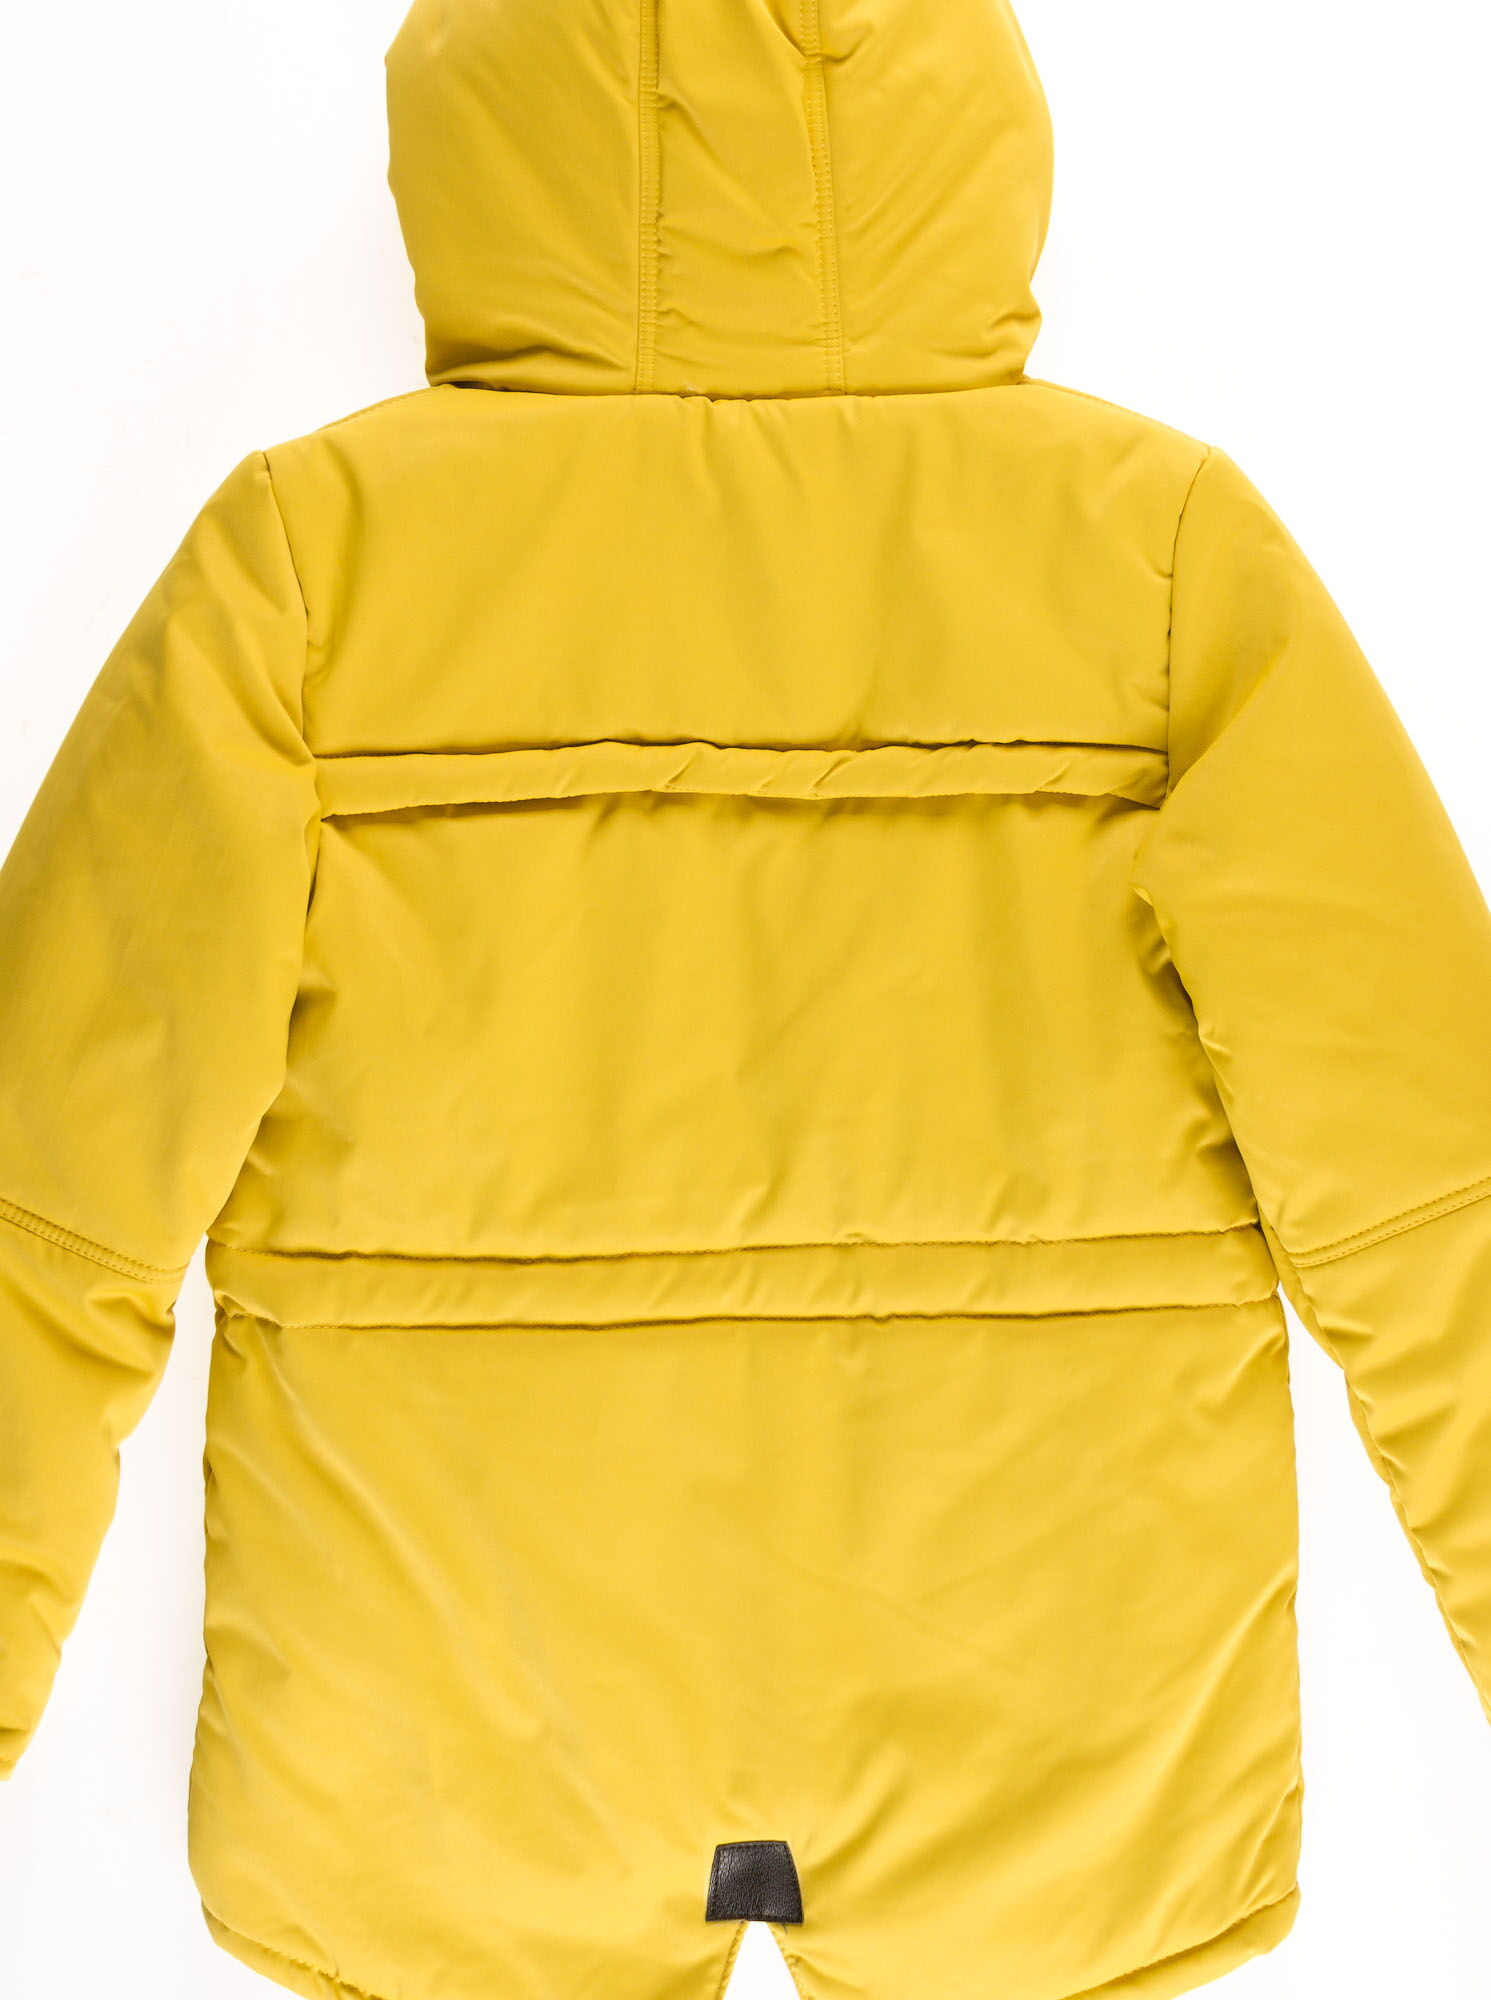 Куртка для мальчика ОДЯГАЙКО желтая 22149О - размеры